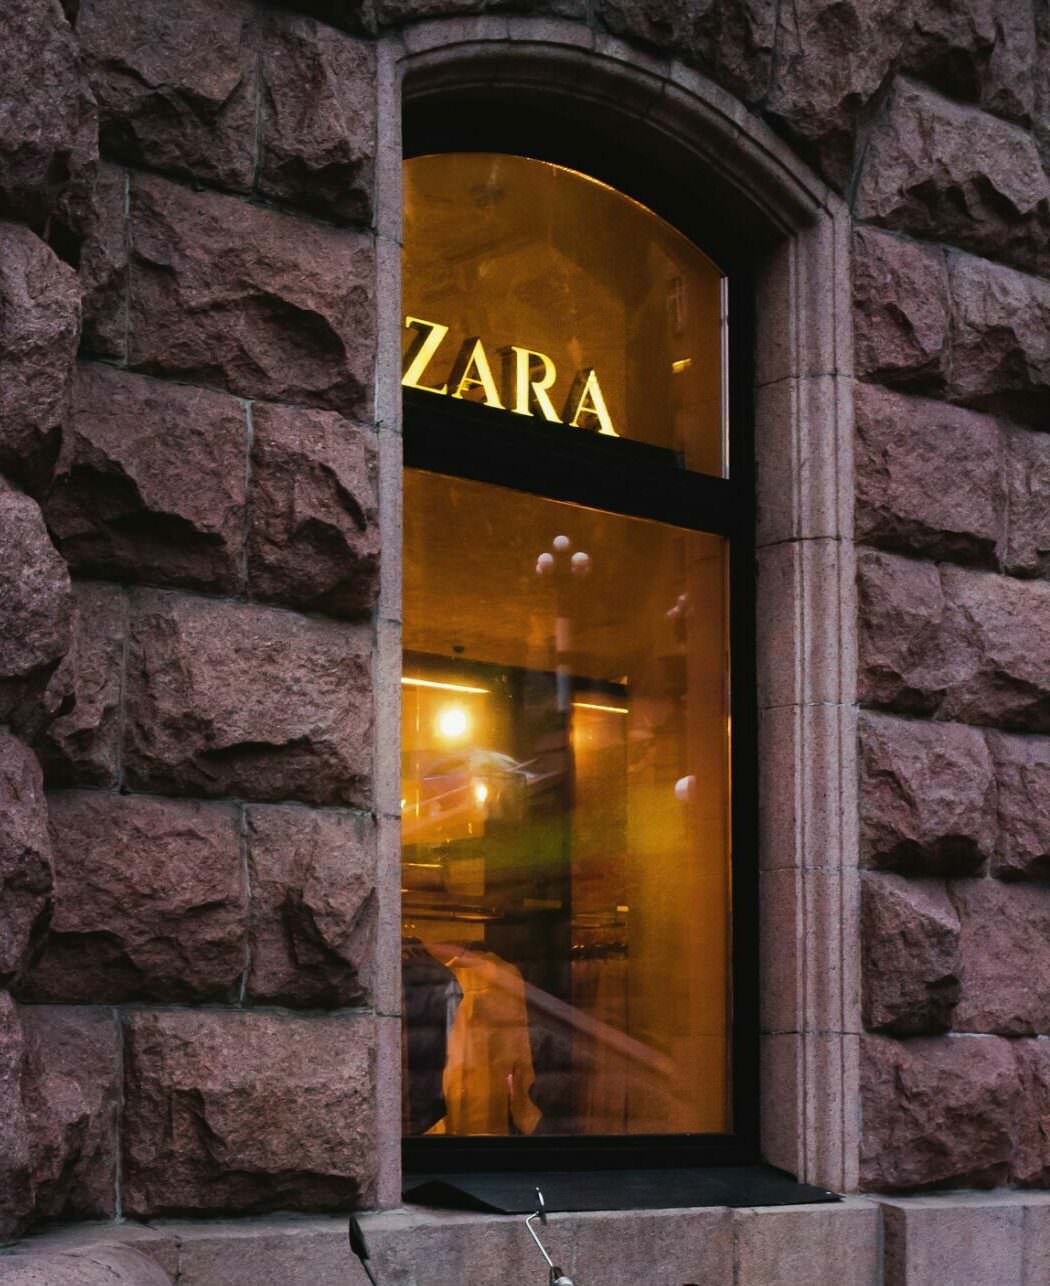 Zara, Inditex